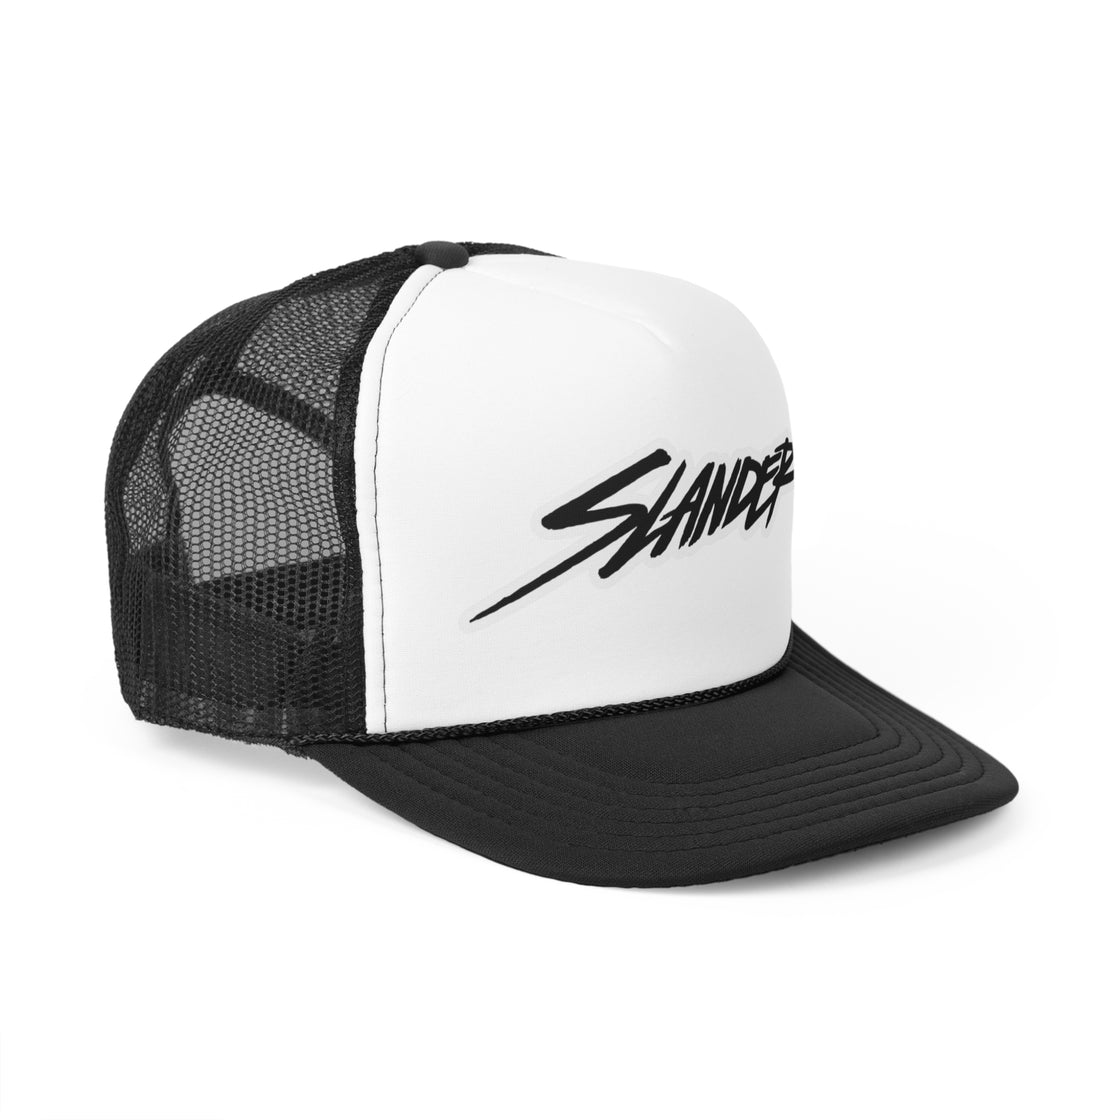 Slander Trucker Hat